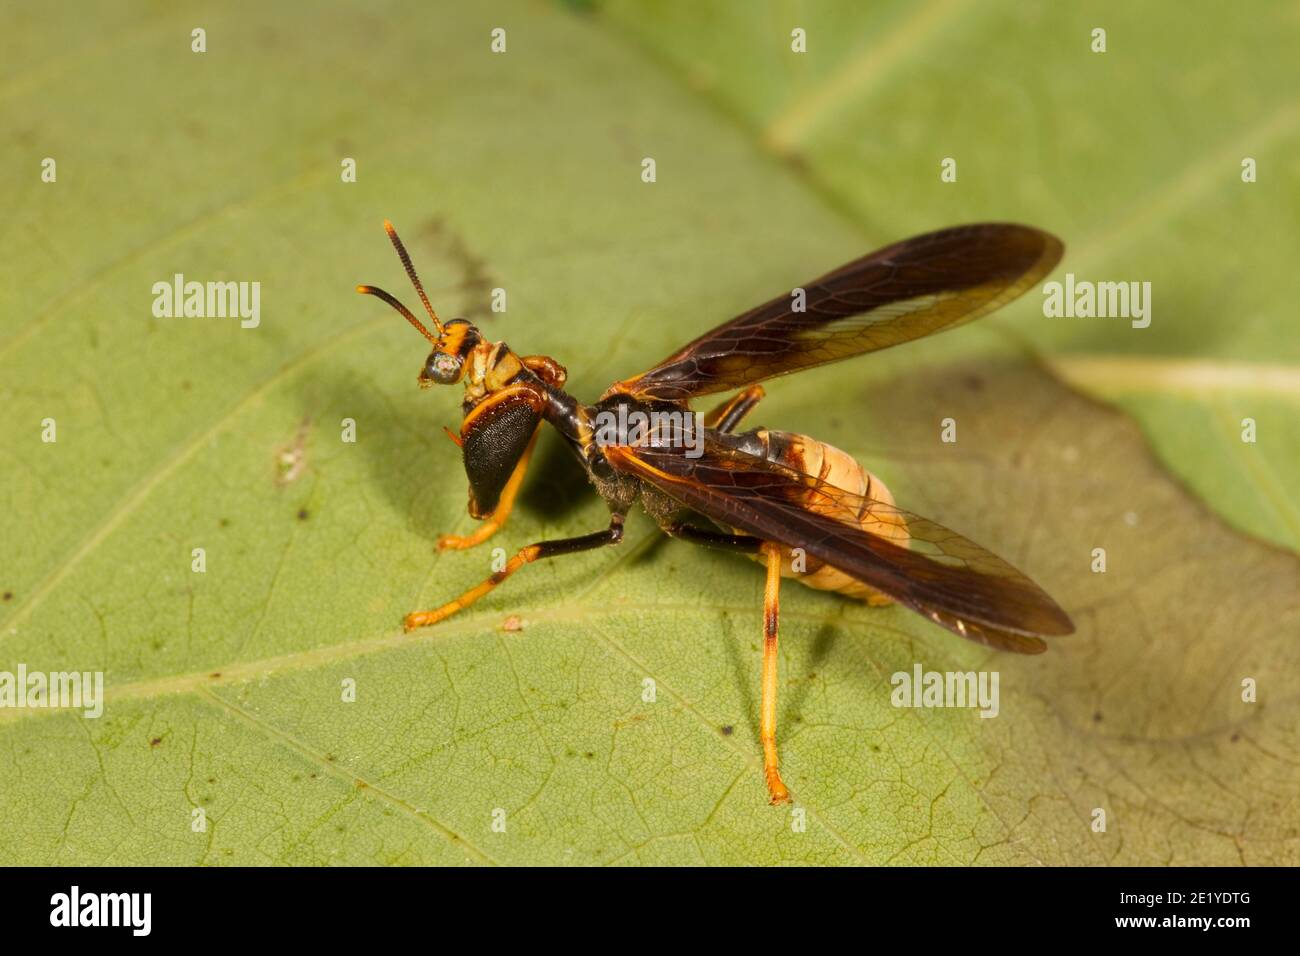 Wasp Mantidfly, Climaciella brunnea, Mantispidae. Polistes wasp mimic, paper wasp mimic. Stock Photo